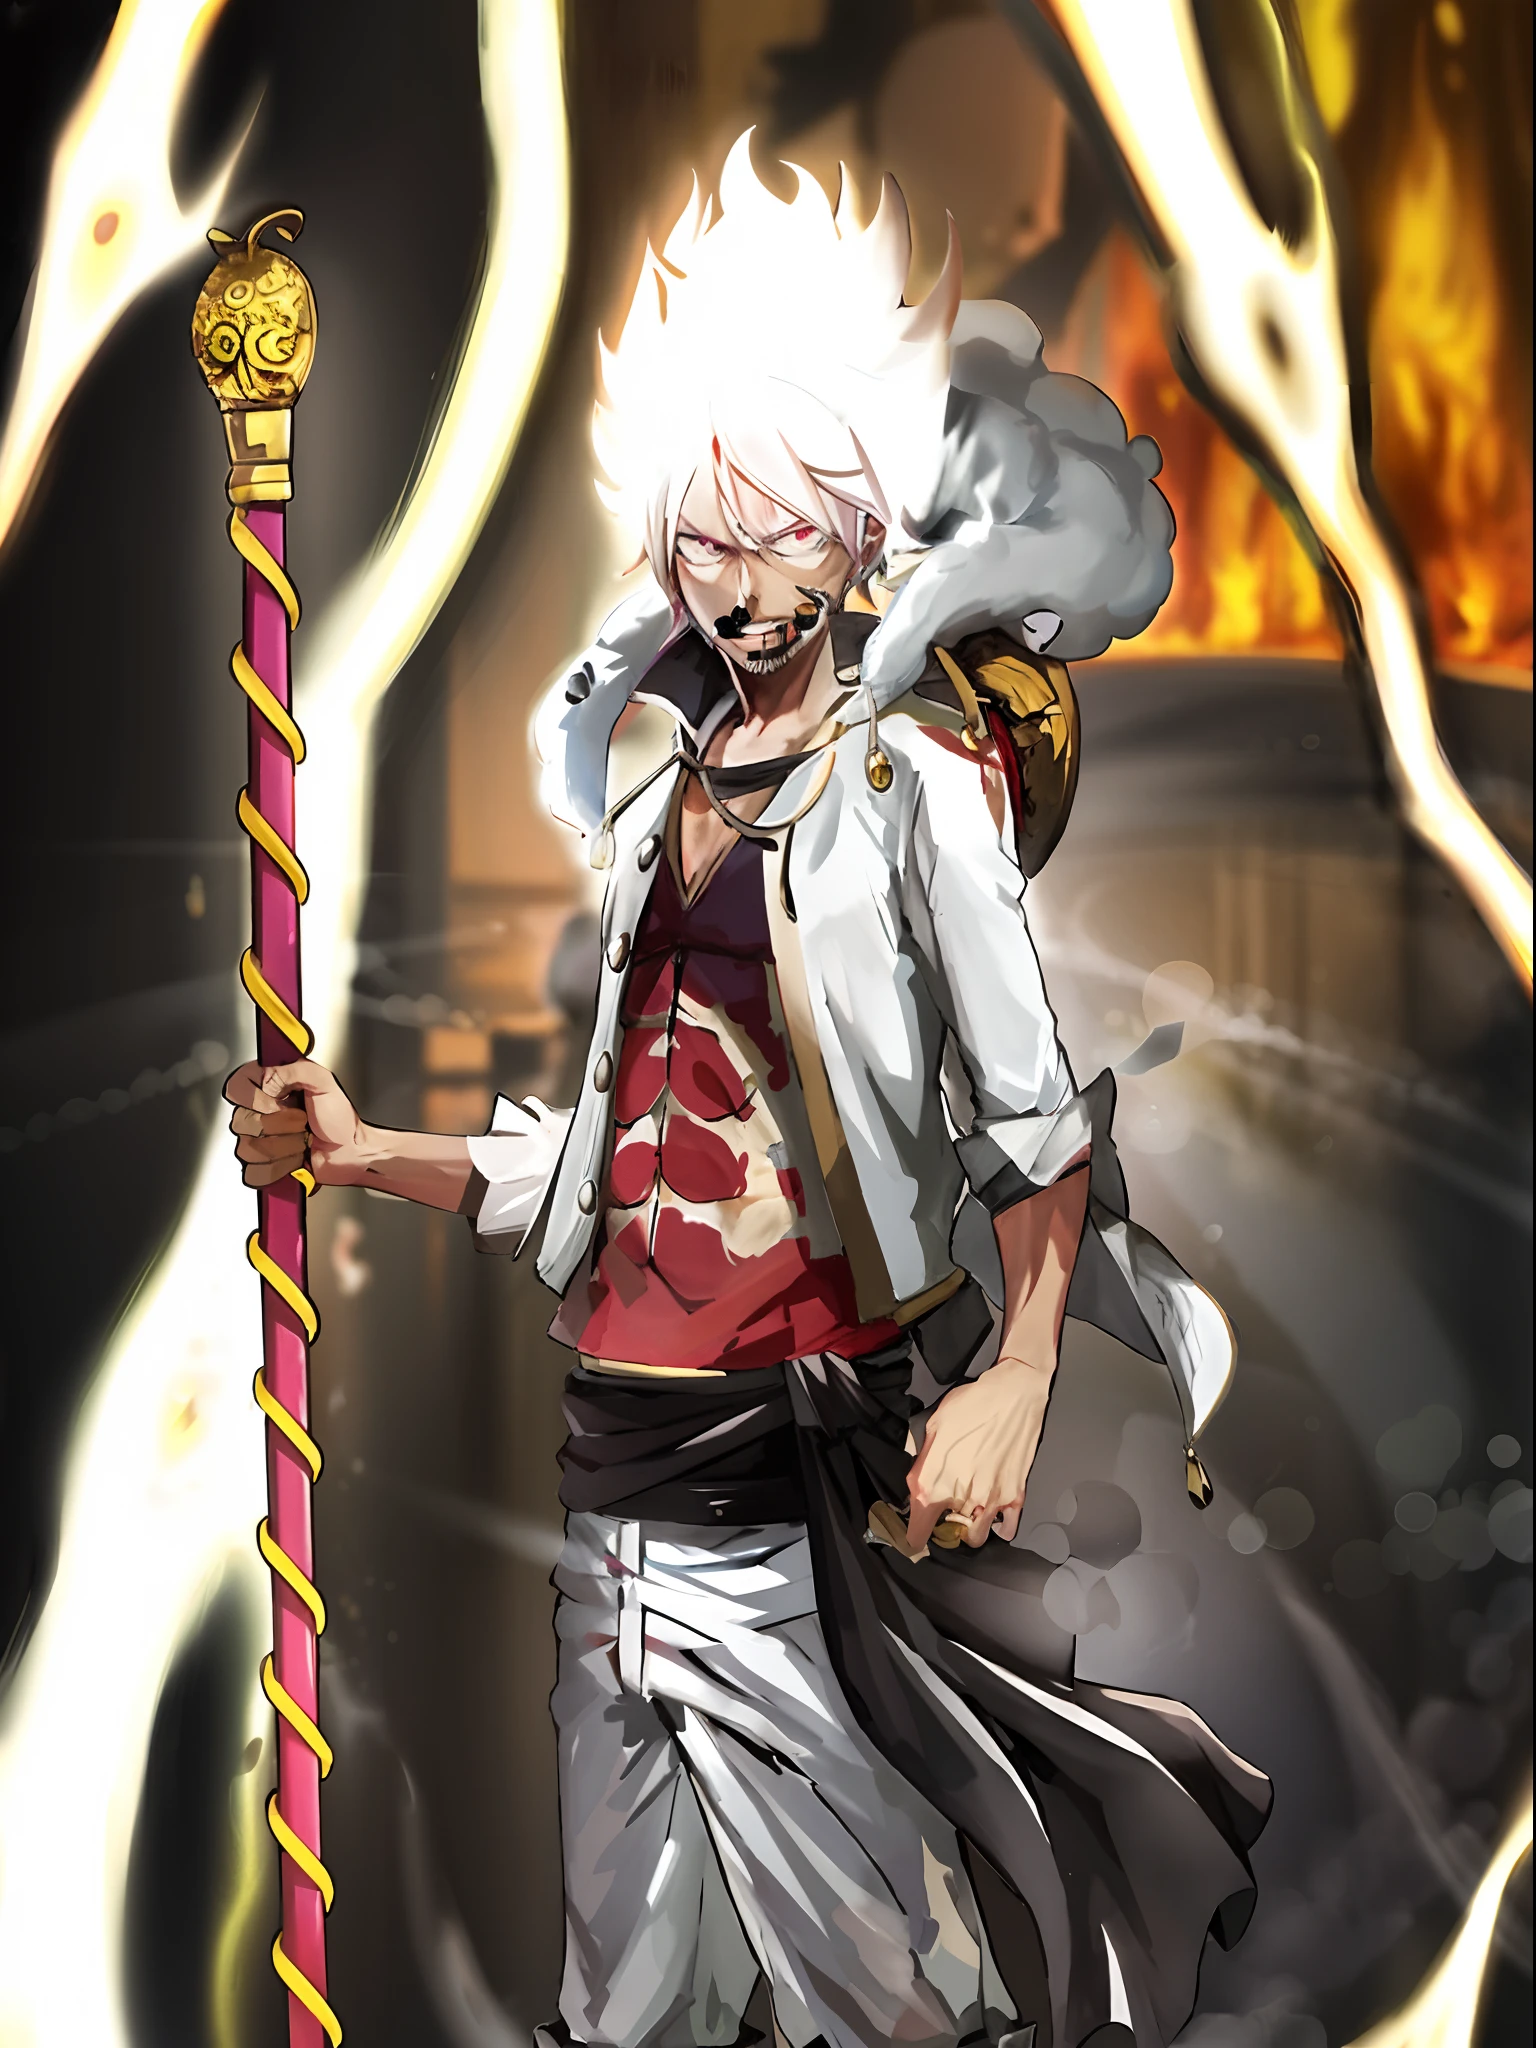 Аниме-персонаж с белыми волосами, держащий меч перед огнем, красивый мужской бог смерти, легендарный бог с копьем, огонь!! полное тело, лесбиянка, седовласый сумасшедший, седовласый бог, из одного куска, Луффи шестерня 5, Джокер похож на Наруто, официальное искусство, джокер как Наруто, цельный художественный стиль, бог хаоса, Нагито Комаэда